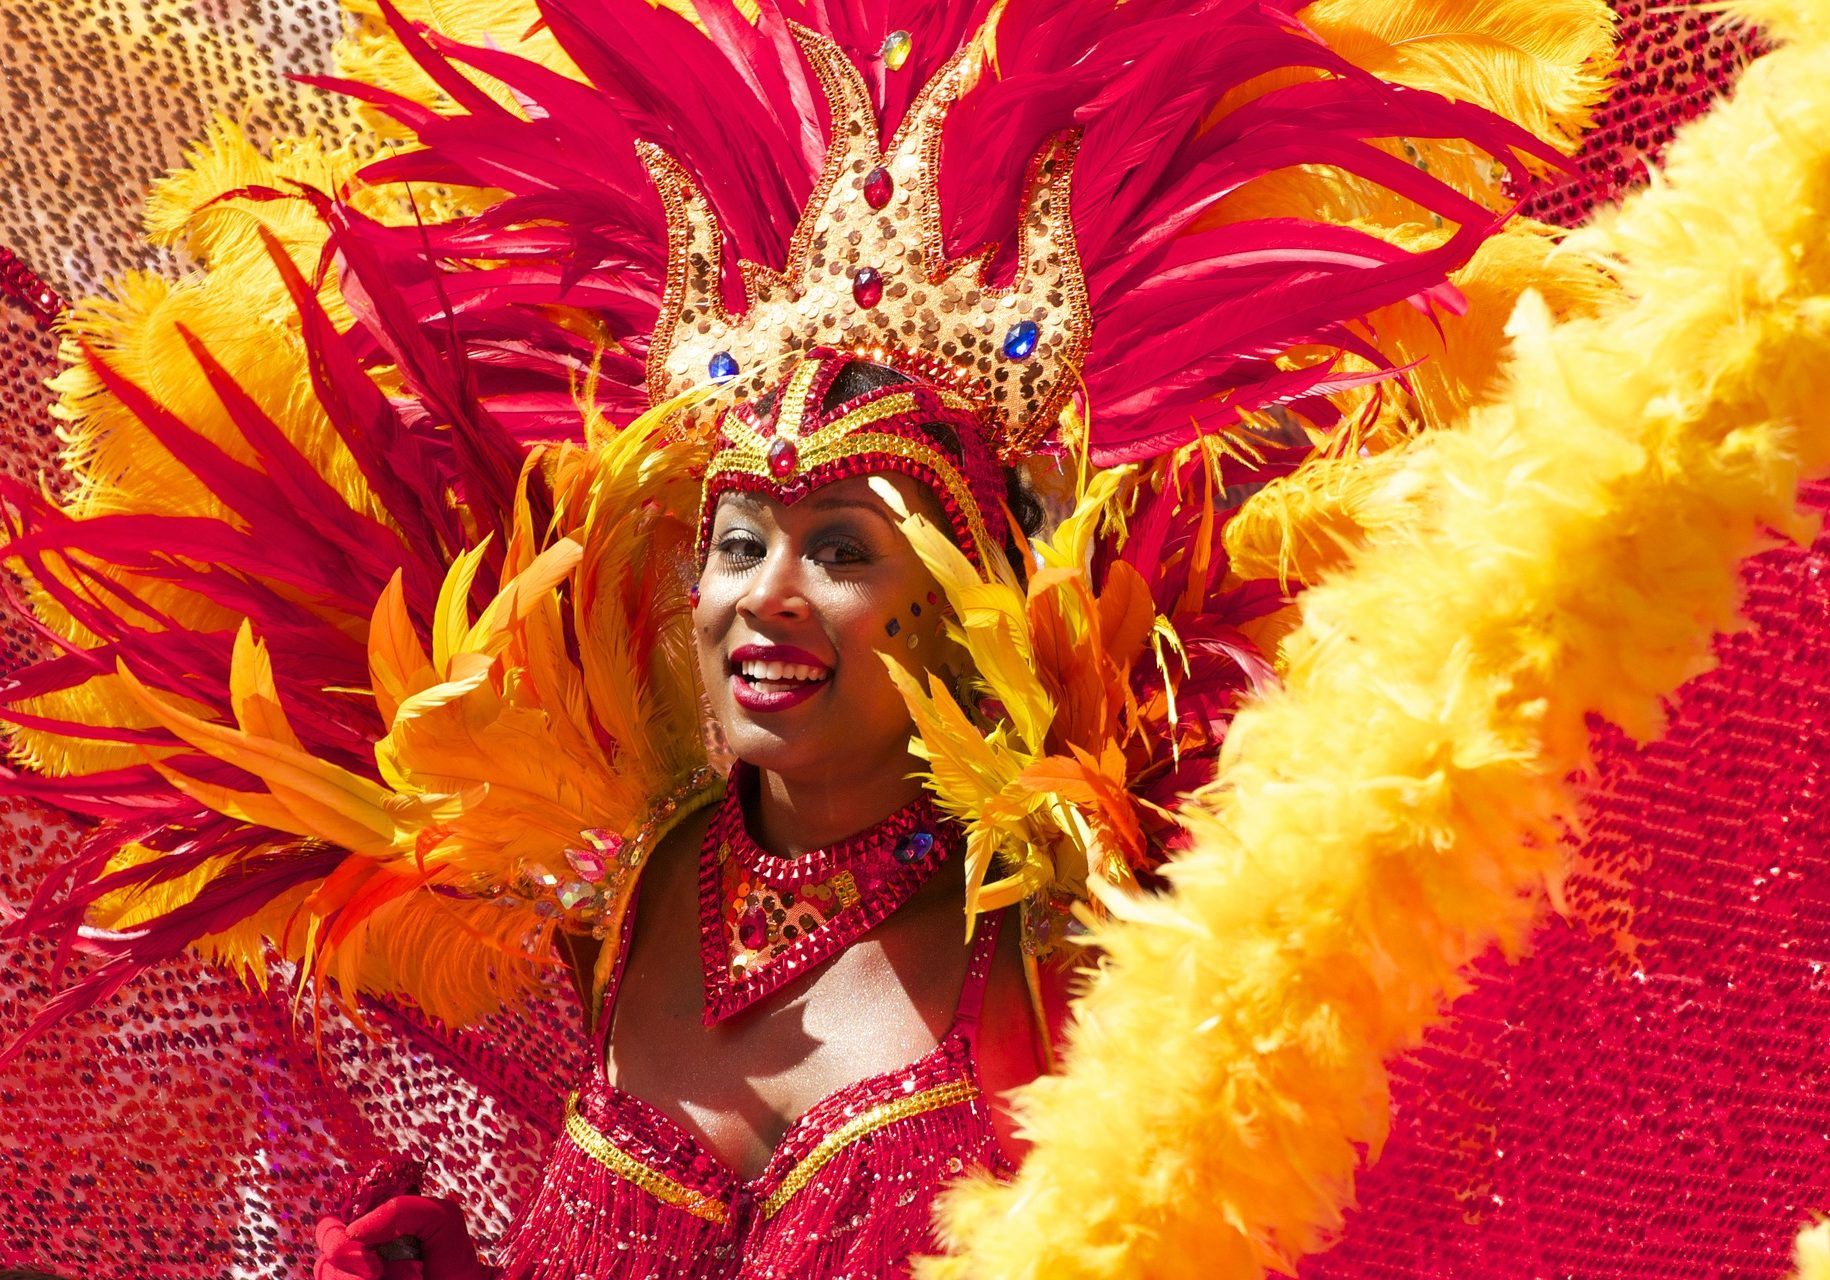 Magischer Blickfang: die farbenprächtigen Kostüme der Tänzerinnen beim Karneval in Rio